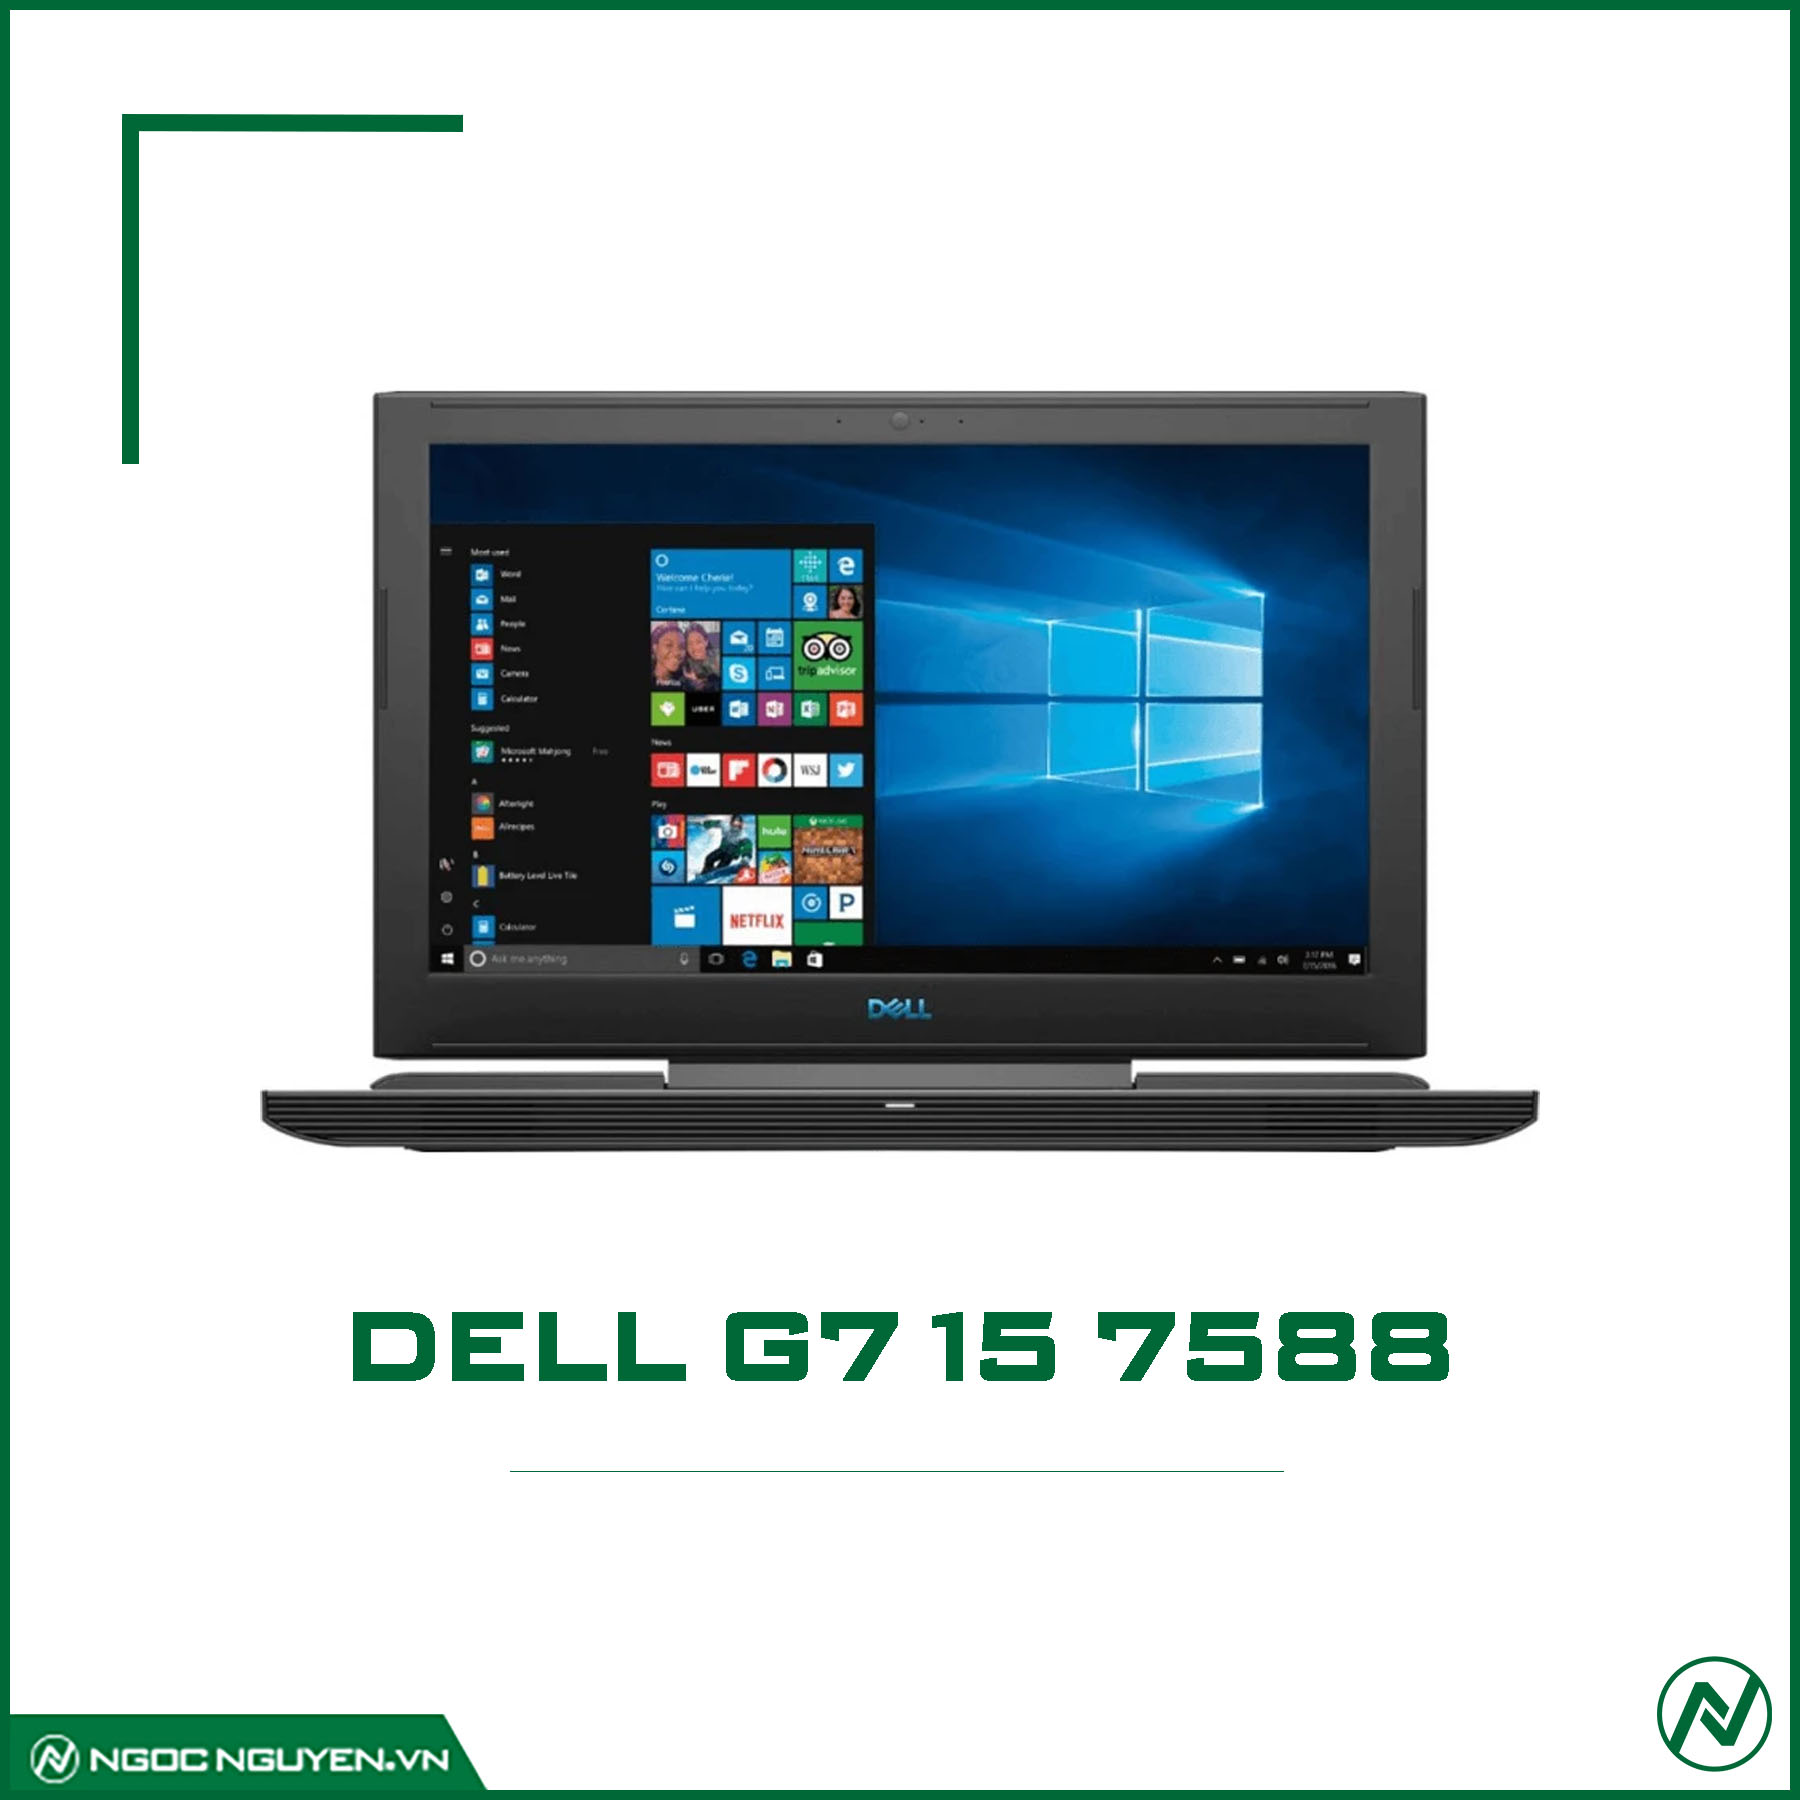 Dell G7 (7588) I5 8300H/ RAM 8GB/ SSD 128GB+HDD 1TB/ GTX 1050TI/ 15.6 INCH  FHD 